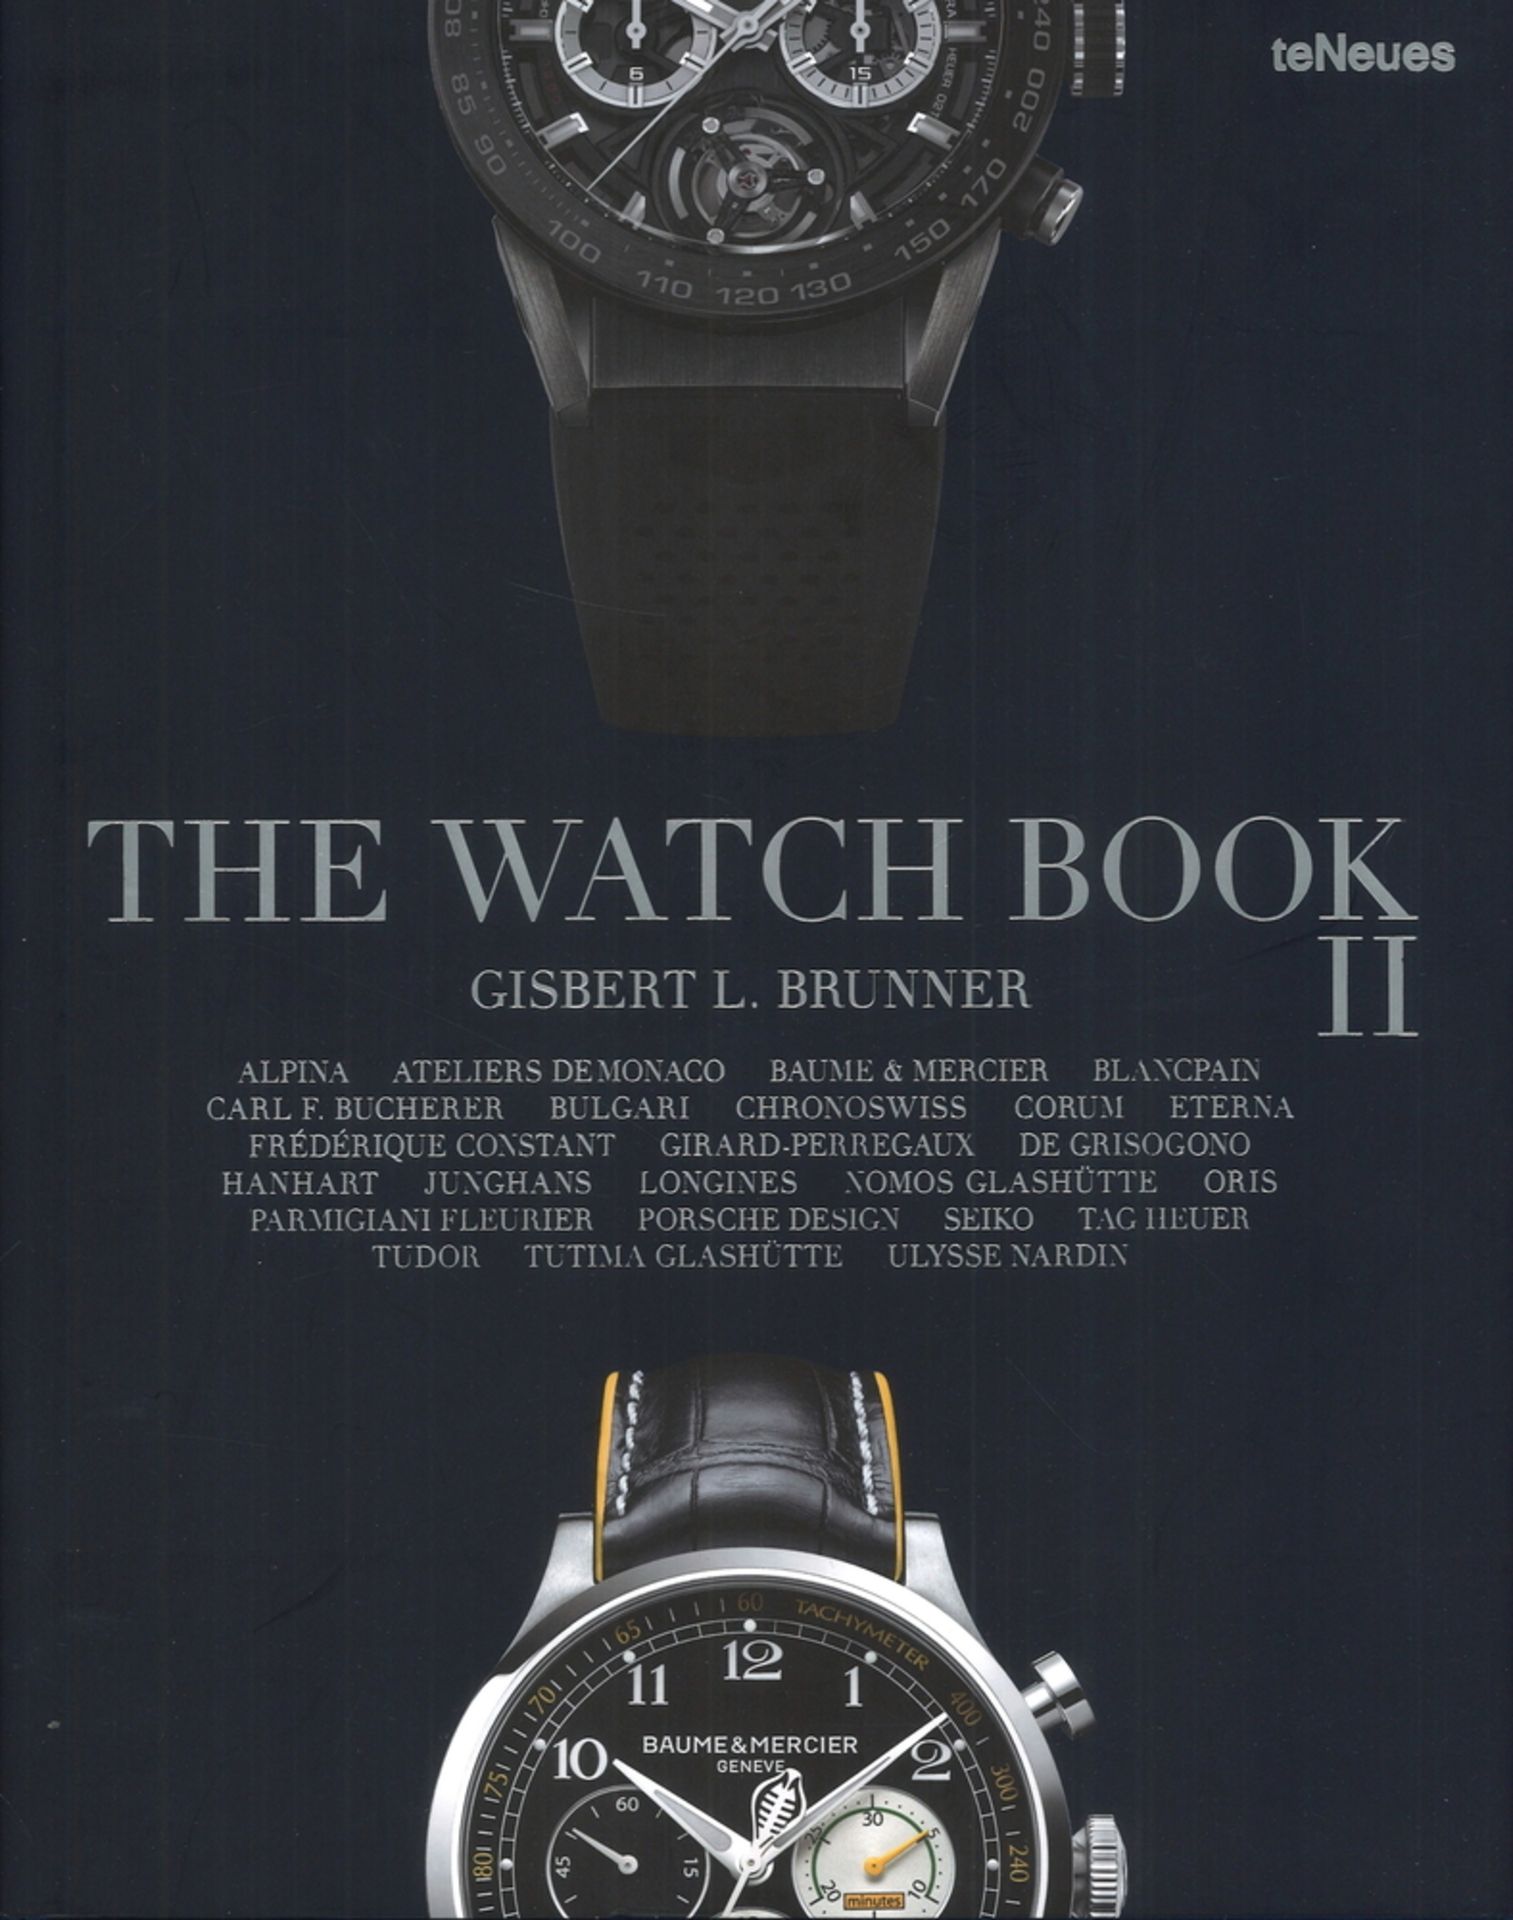 The Watch Book II. Gisbert L. Brunner. Verlag teNeues. Sehr guter Zustand.